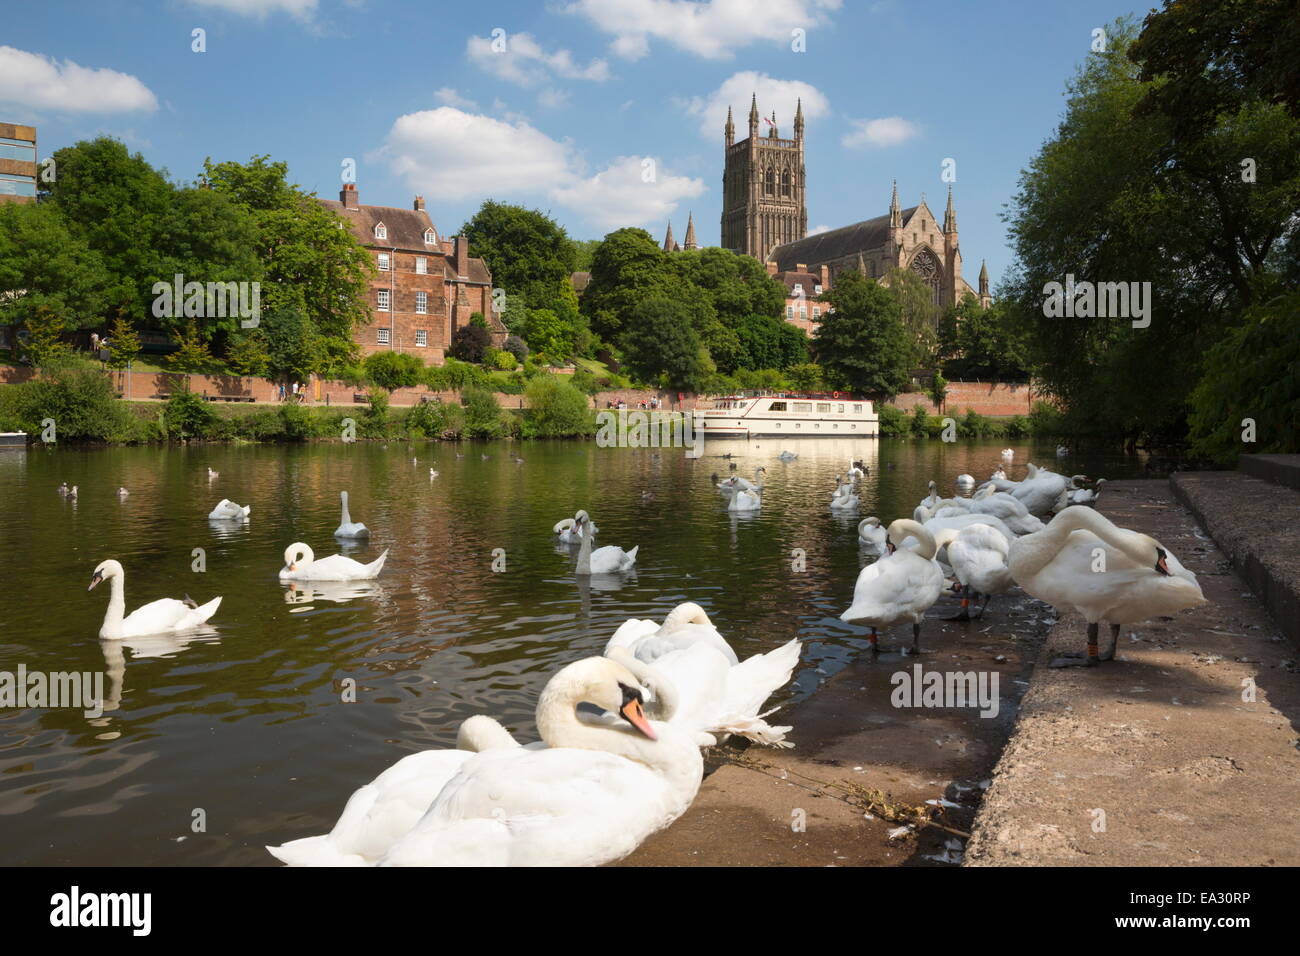 Les cygnes au bord de la rivière Severn et de la cathédrale de Worcester, Worcester, Worcestershire, Angleterre, Royaume-Uni, Europe Banque D'Images